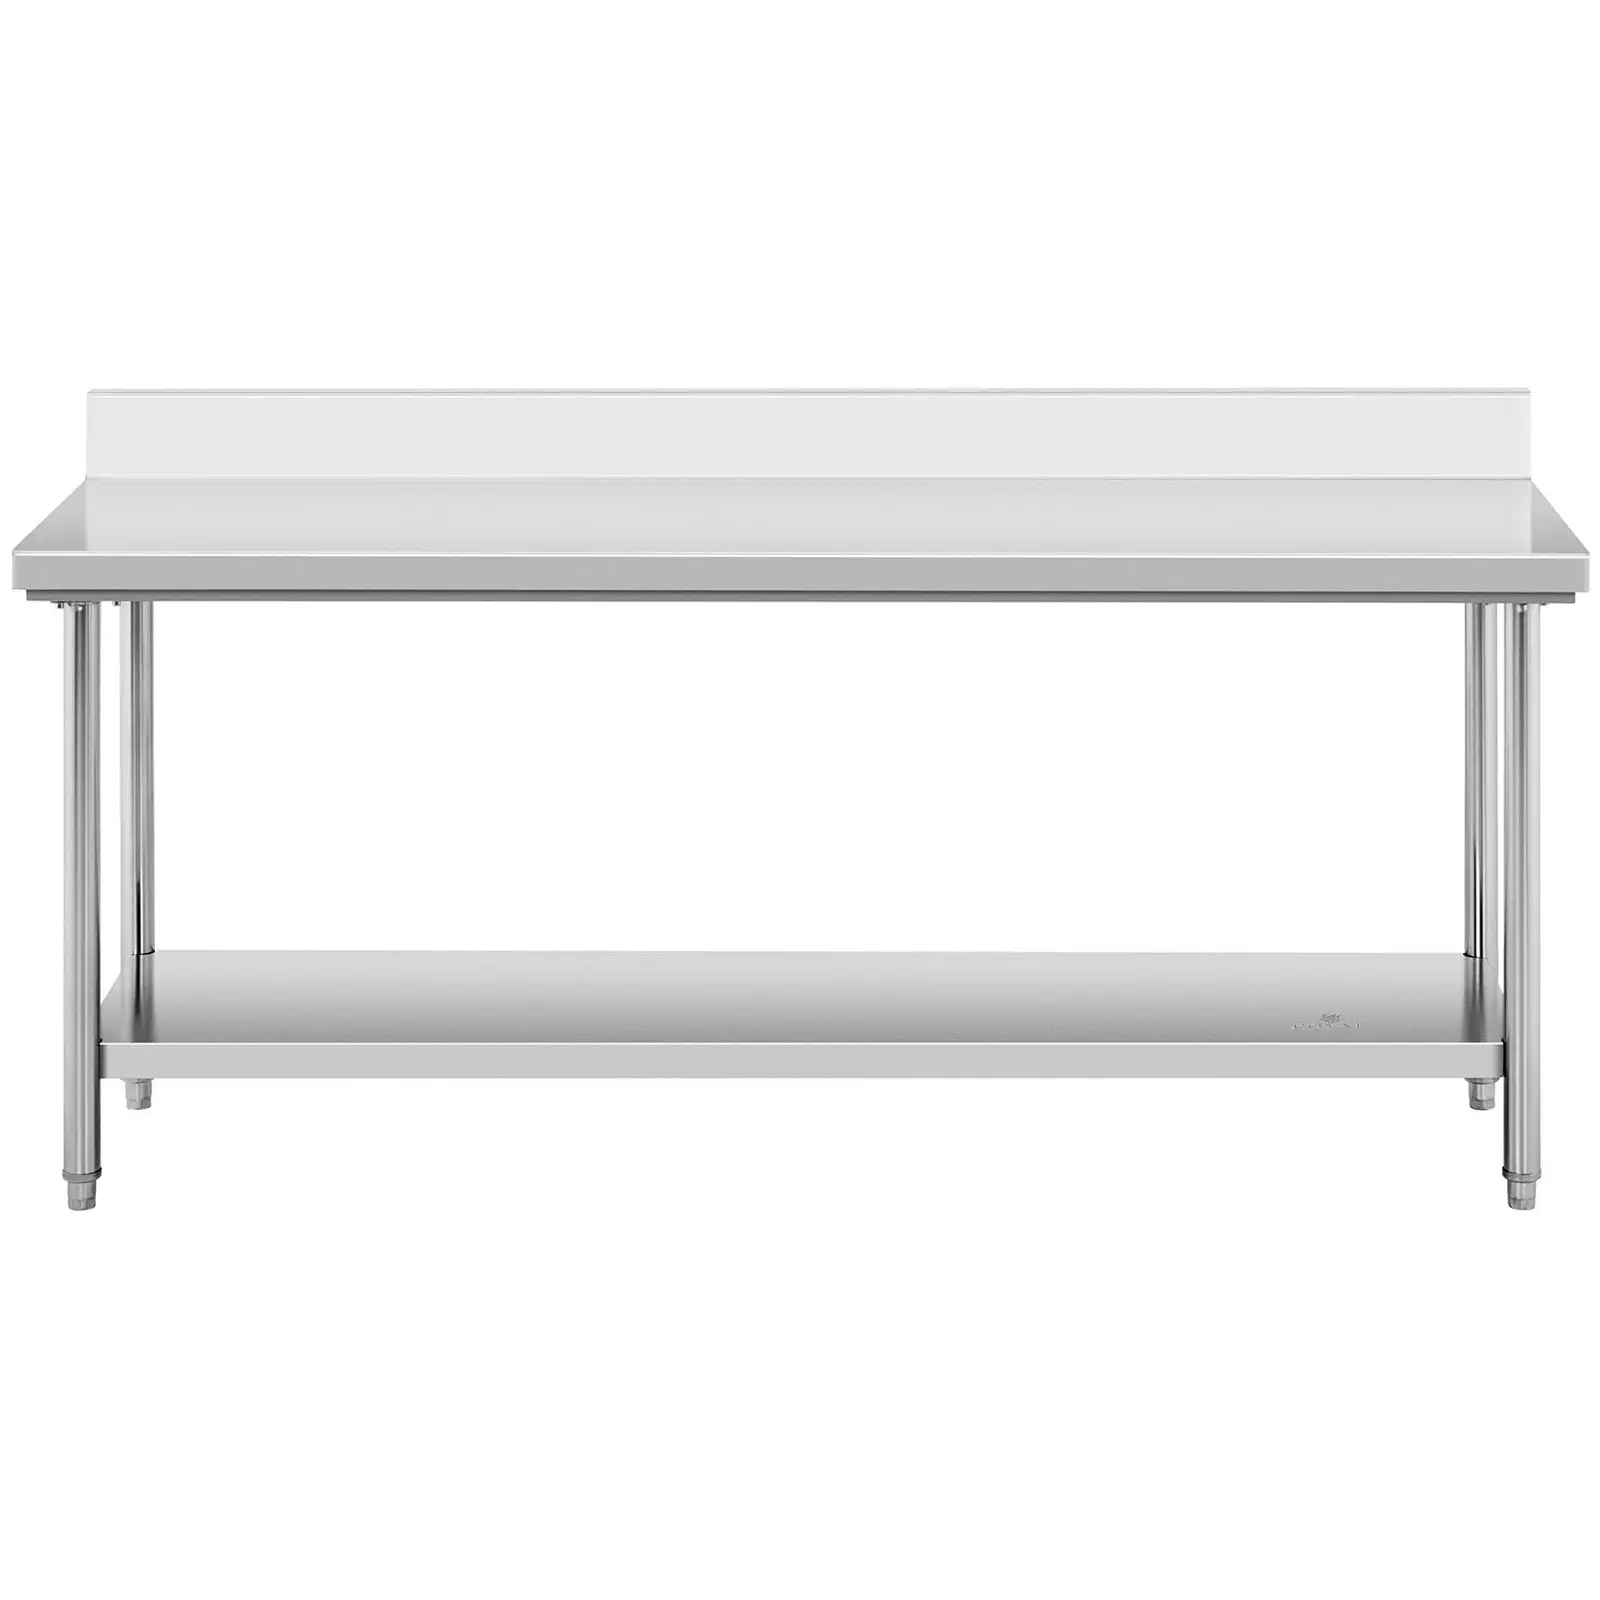 Pracovný stôl z nehrdzavejúcej ocele - 200 x 60 cm - lem - nosnosť 195 kg